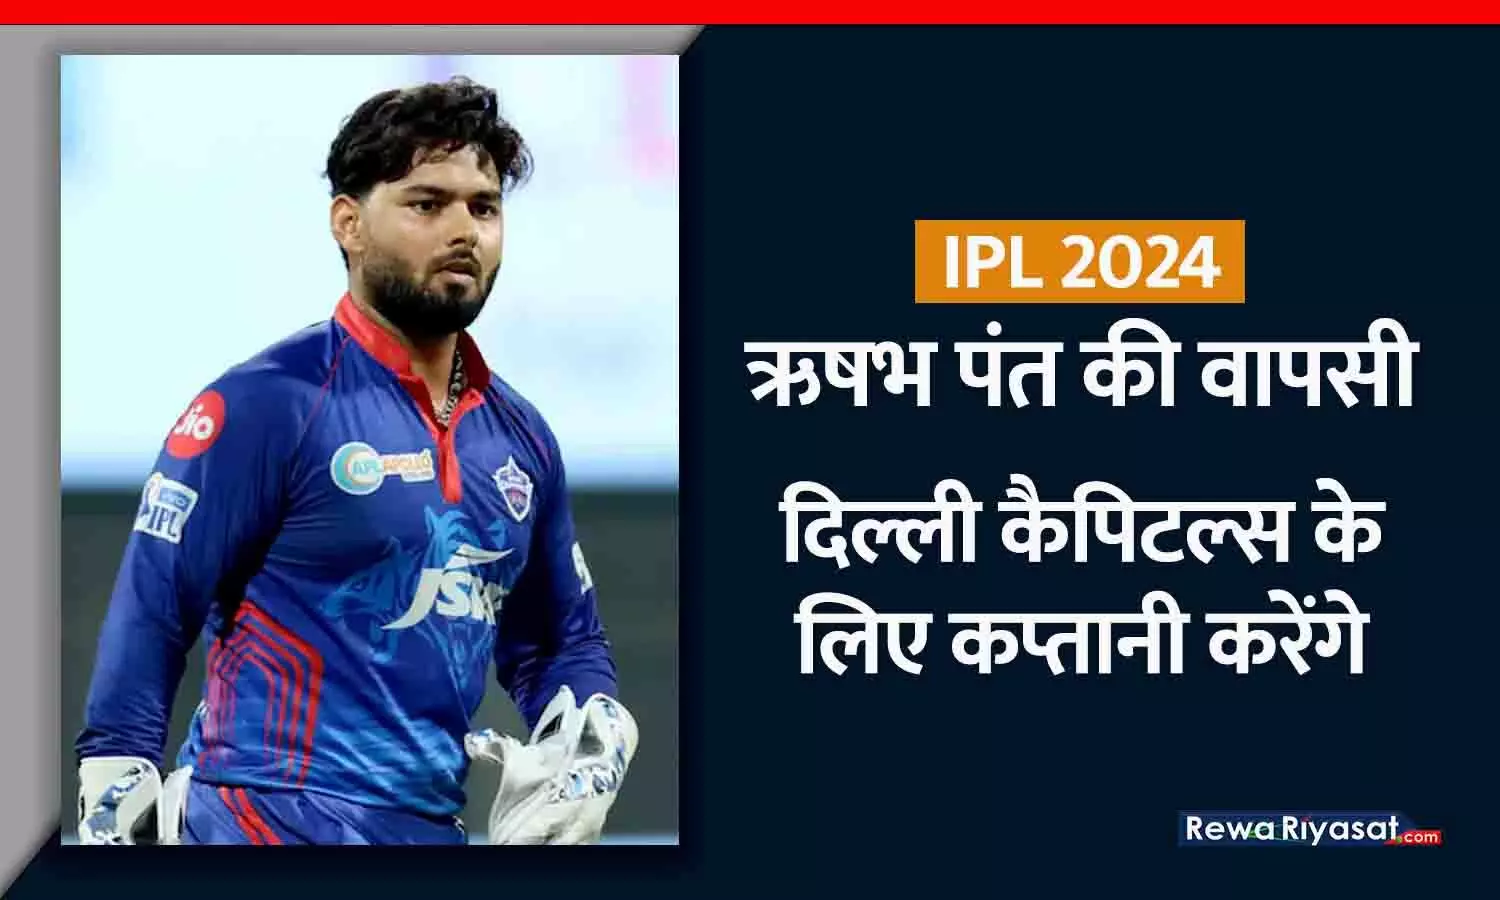 IPL 2024 में ऋषभ पंत की वापसी: दिल्ली कैपिटल्स के लिए कप्तानी करेंगे, टीम के चेयरमैन पार्थ जिंदल ने घोषणा की